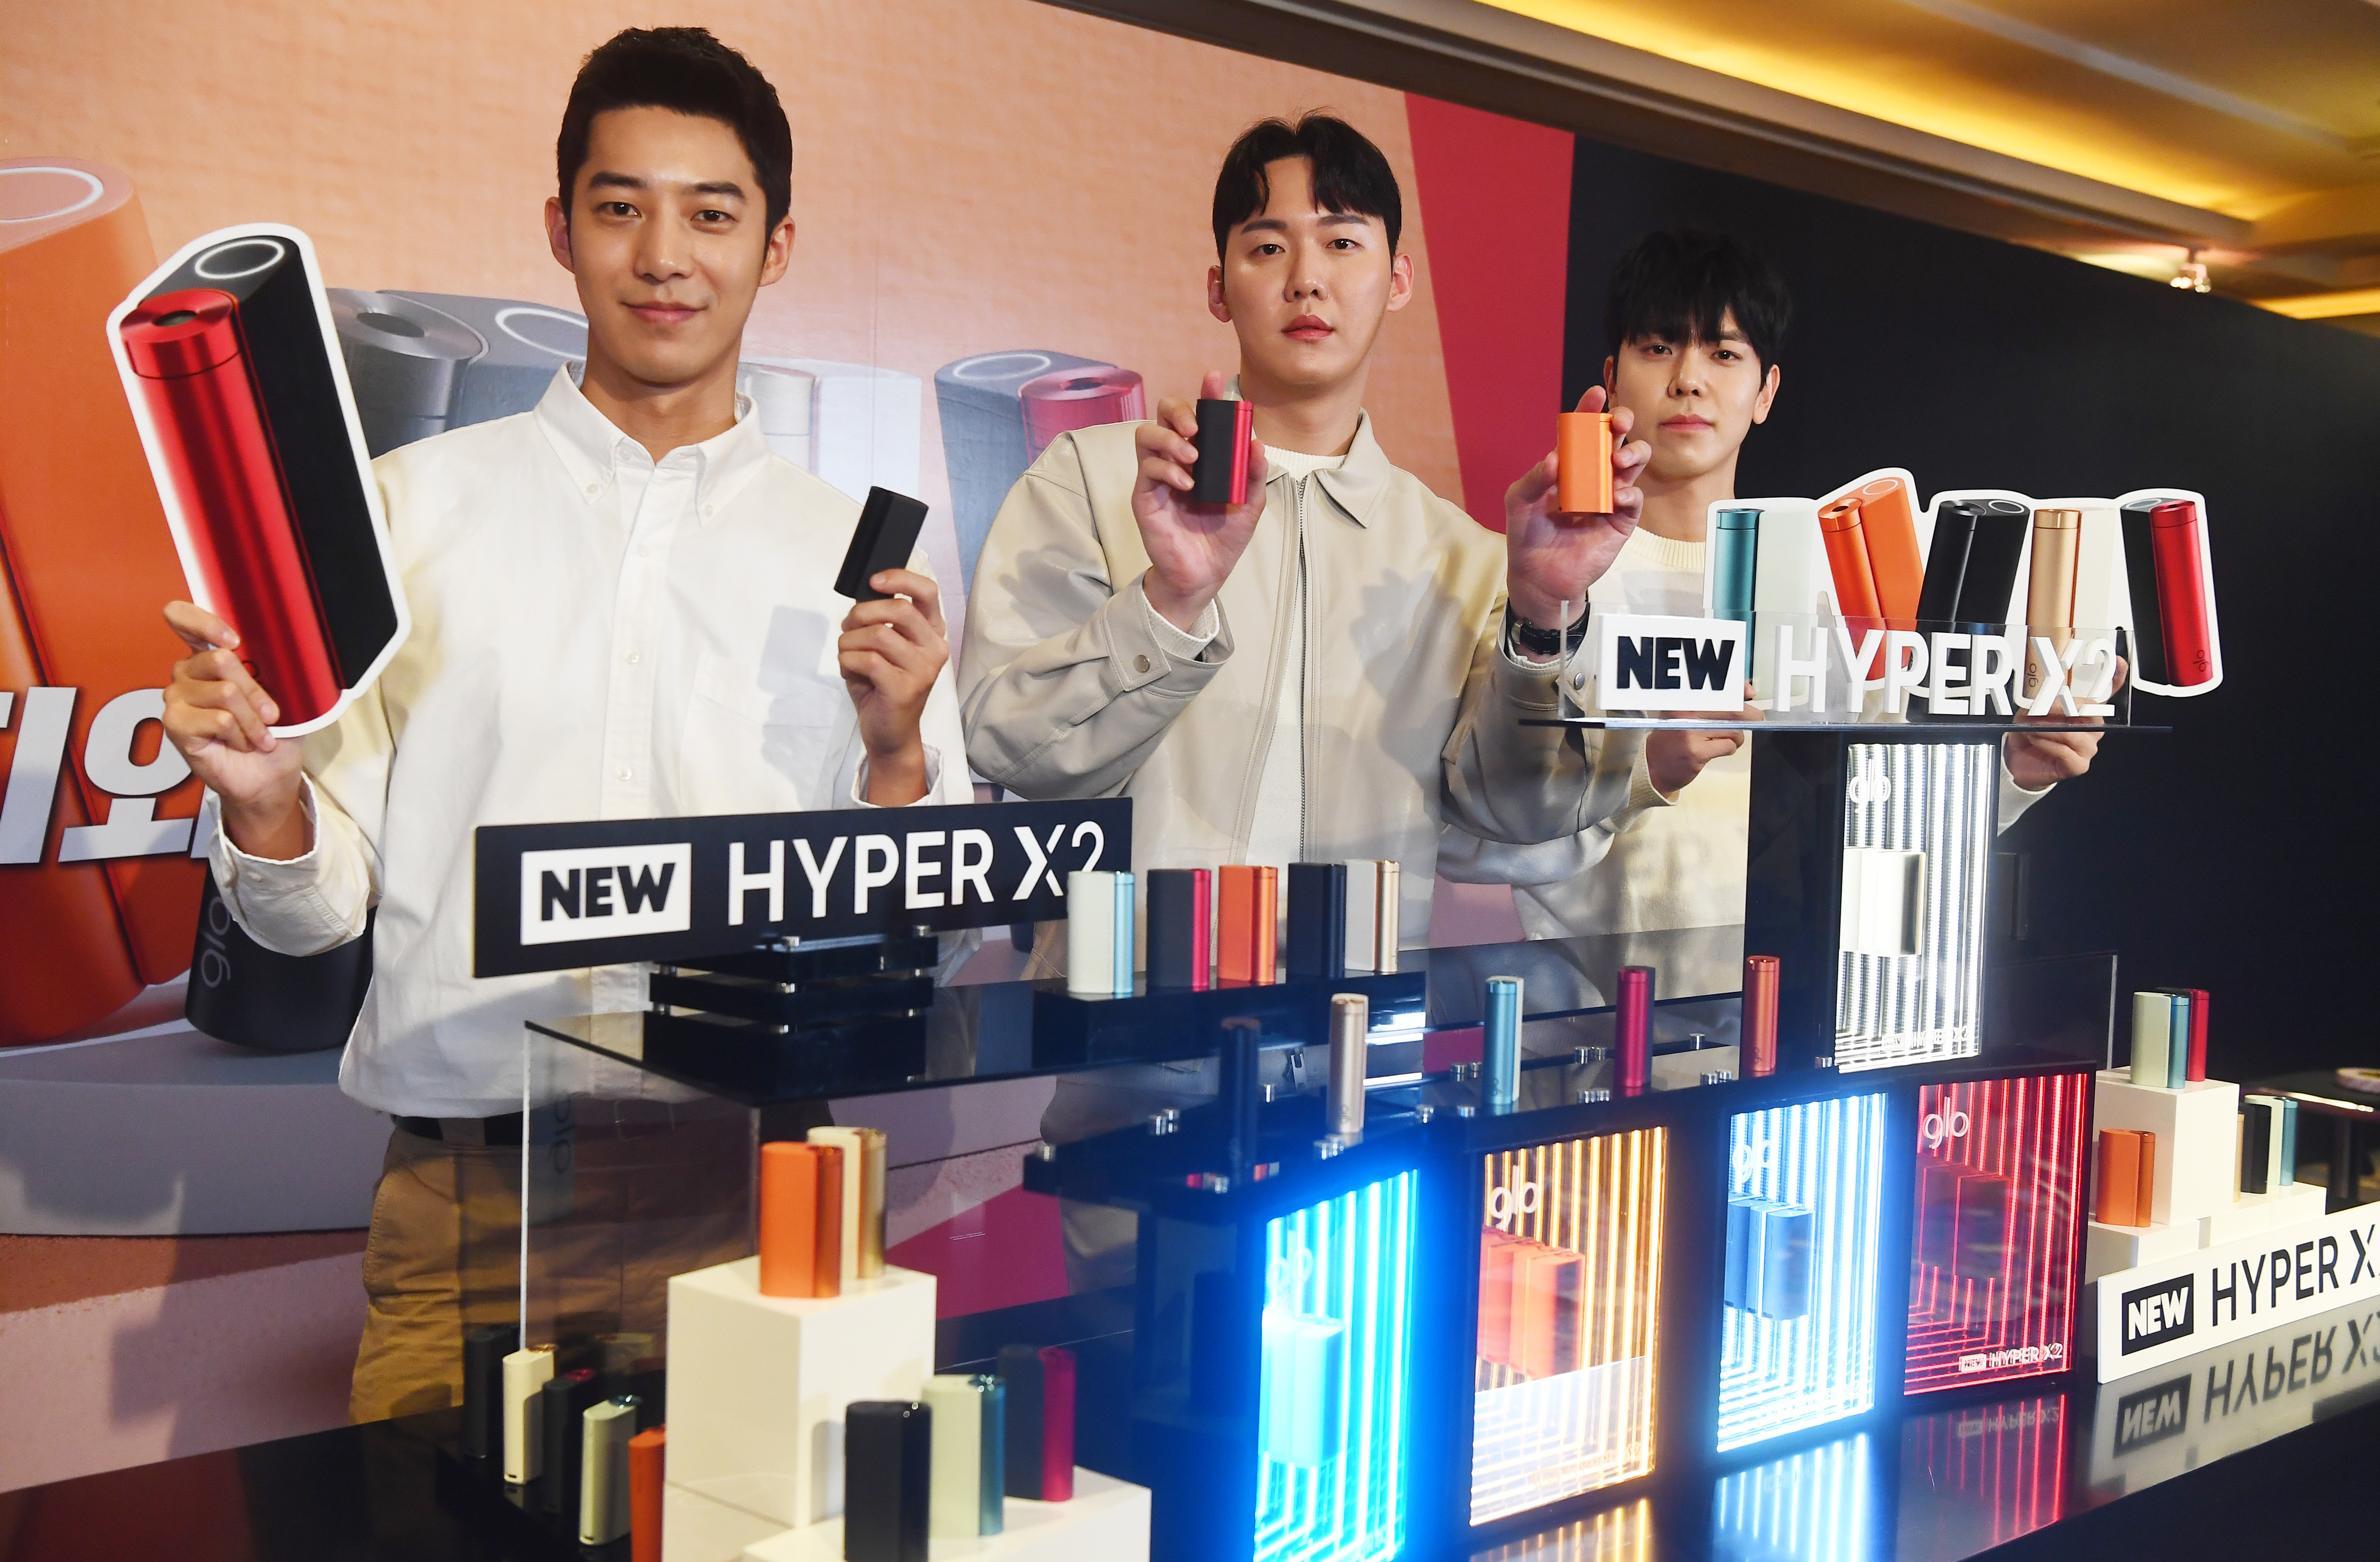 14일 서울 중구 롯데호텔에서 열린 BAT 로스만스의 궐련형 전자담배 ‘글로 하이퍼 X2’ 출시 행사에서 모델들이 제품을 선보이고 있다. 2023.2.14  안주영 전문기자